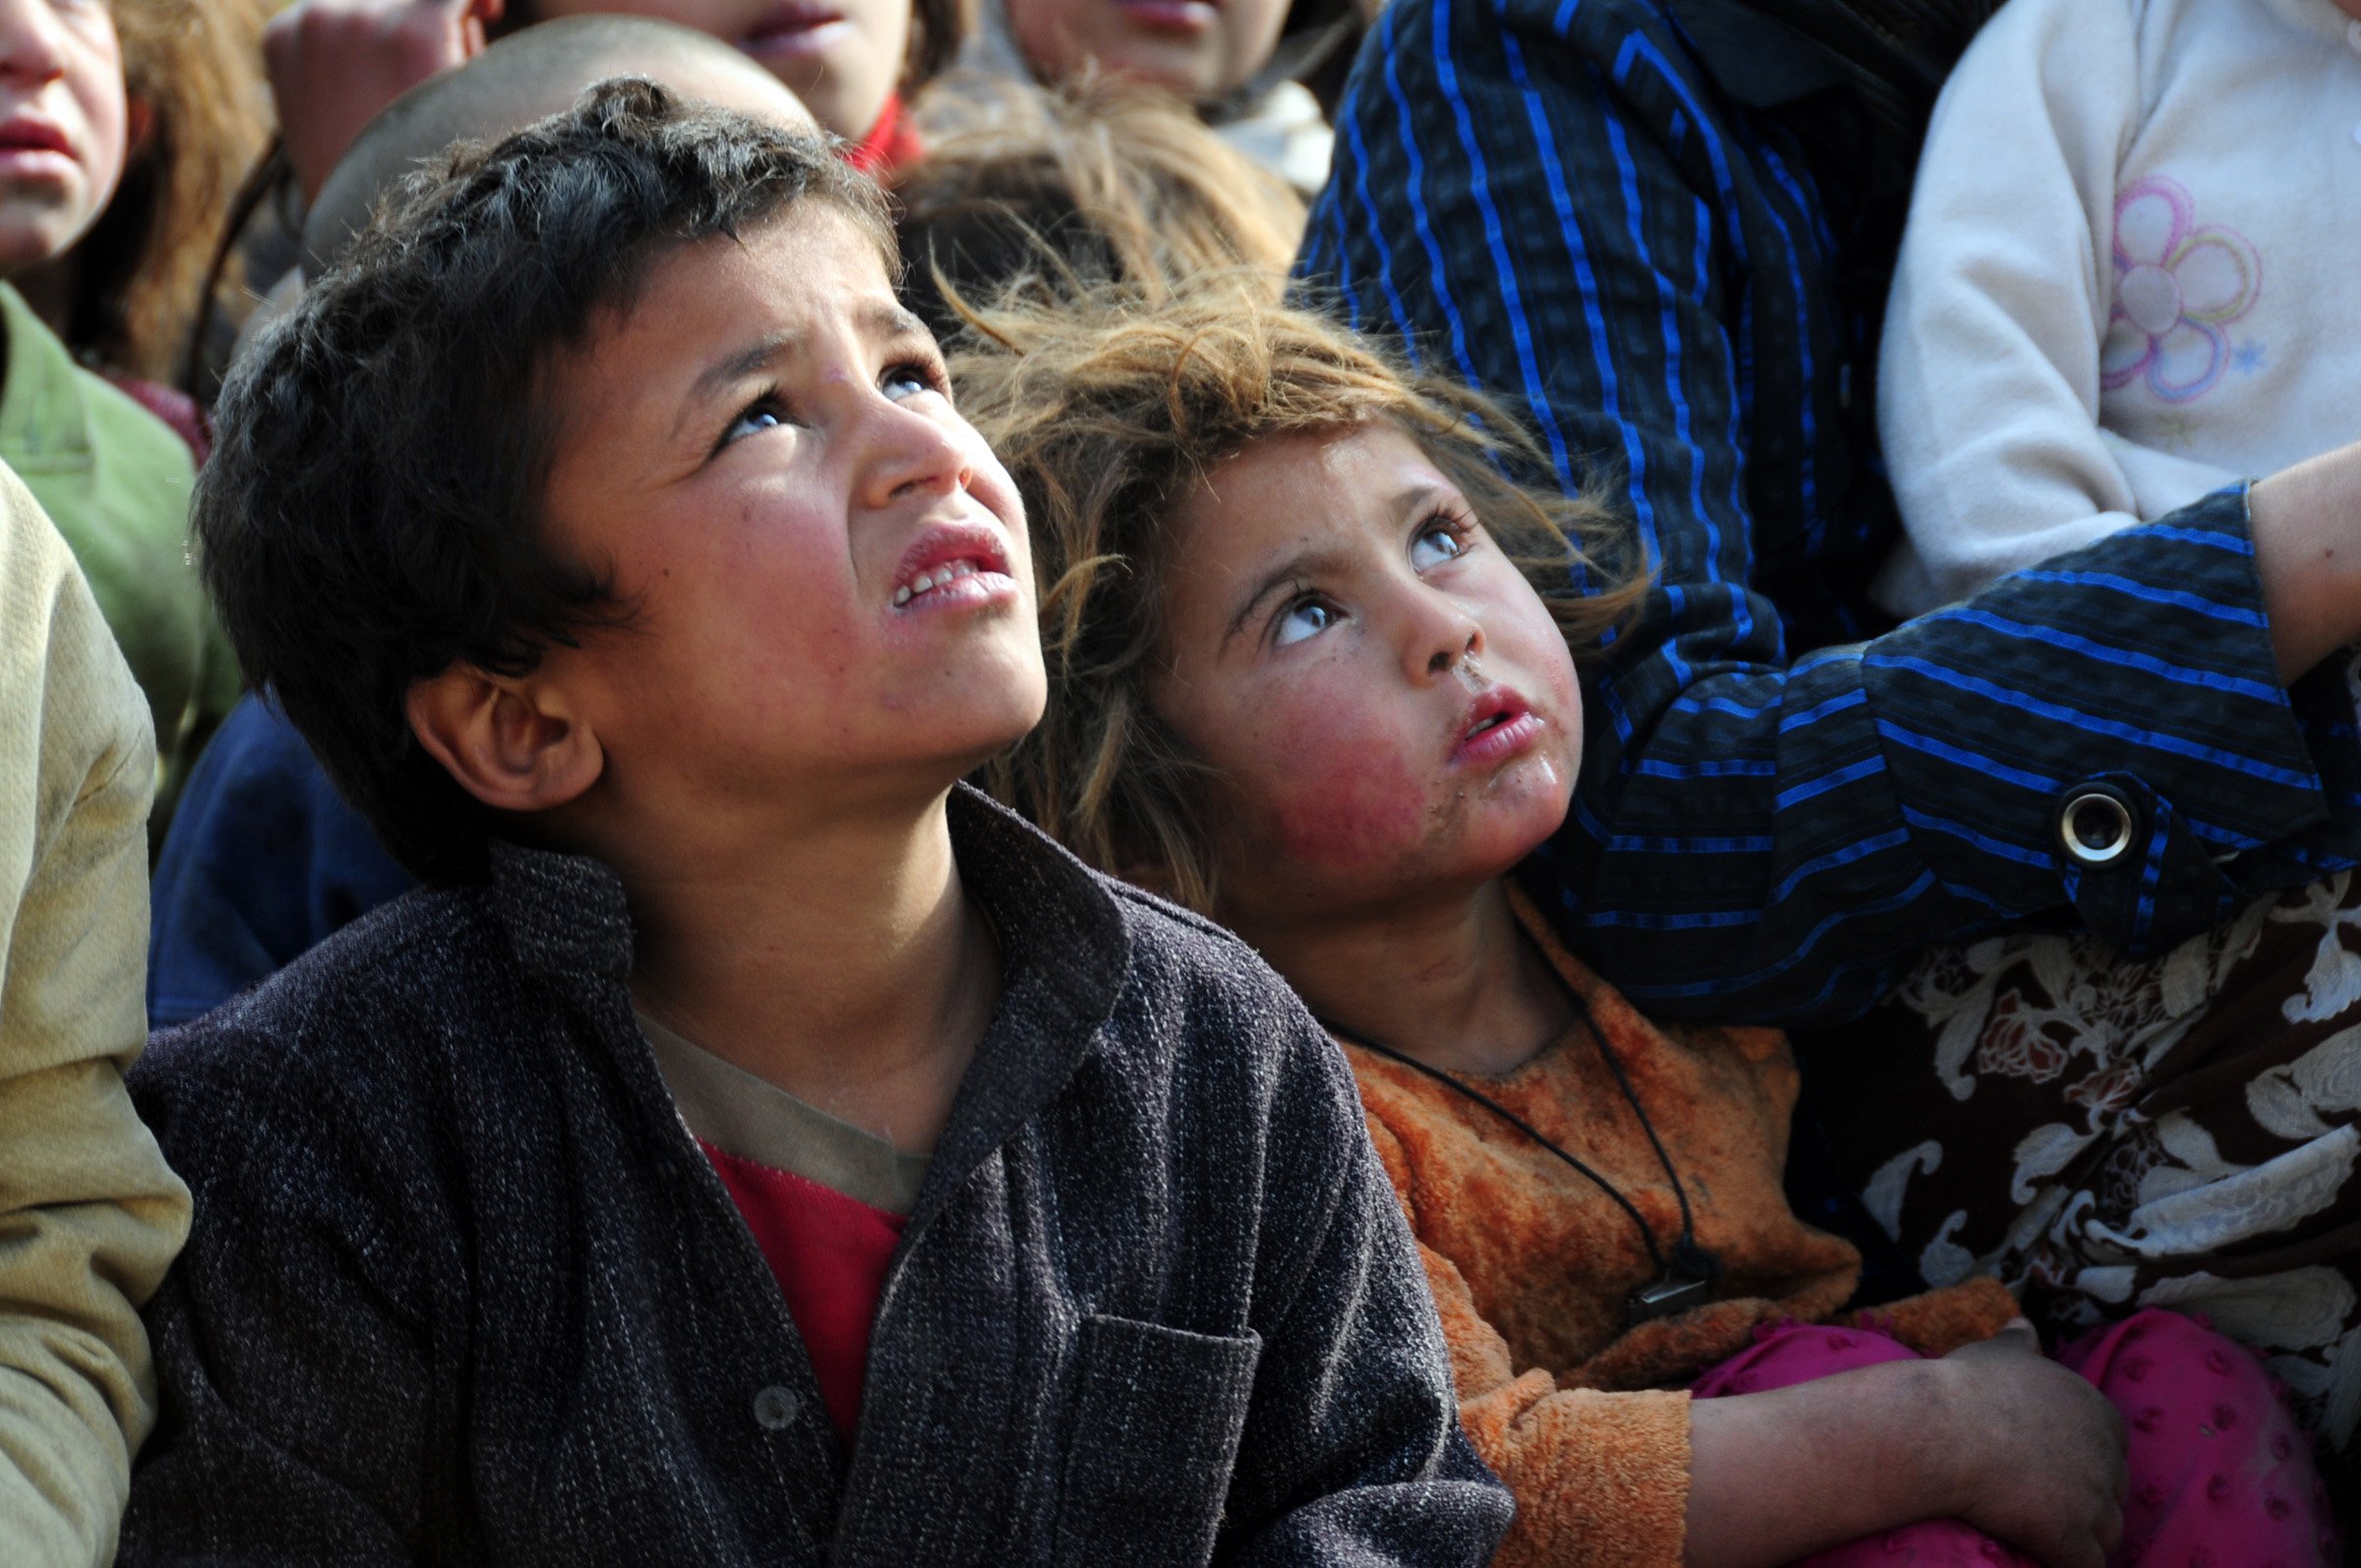 “As crianças tiveram suas infâncias arrancadas”, aponta relatório após 1 ano de Talibã